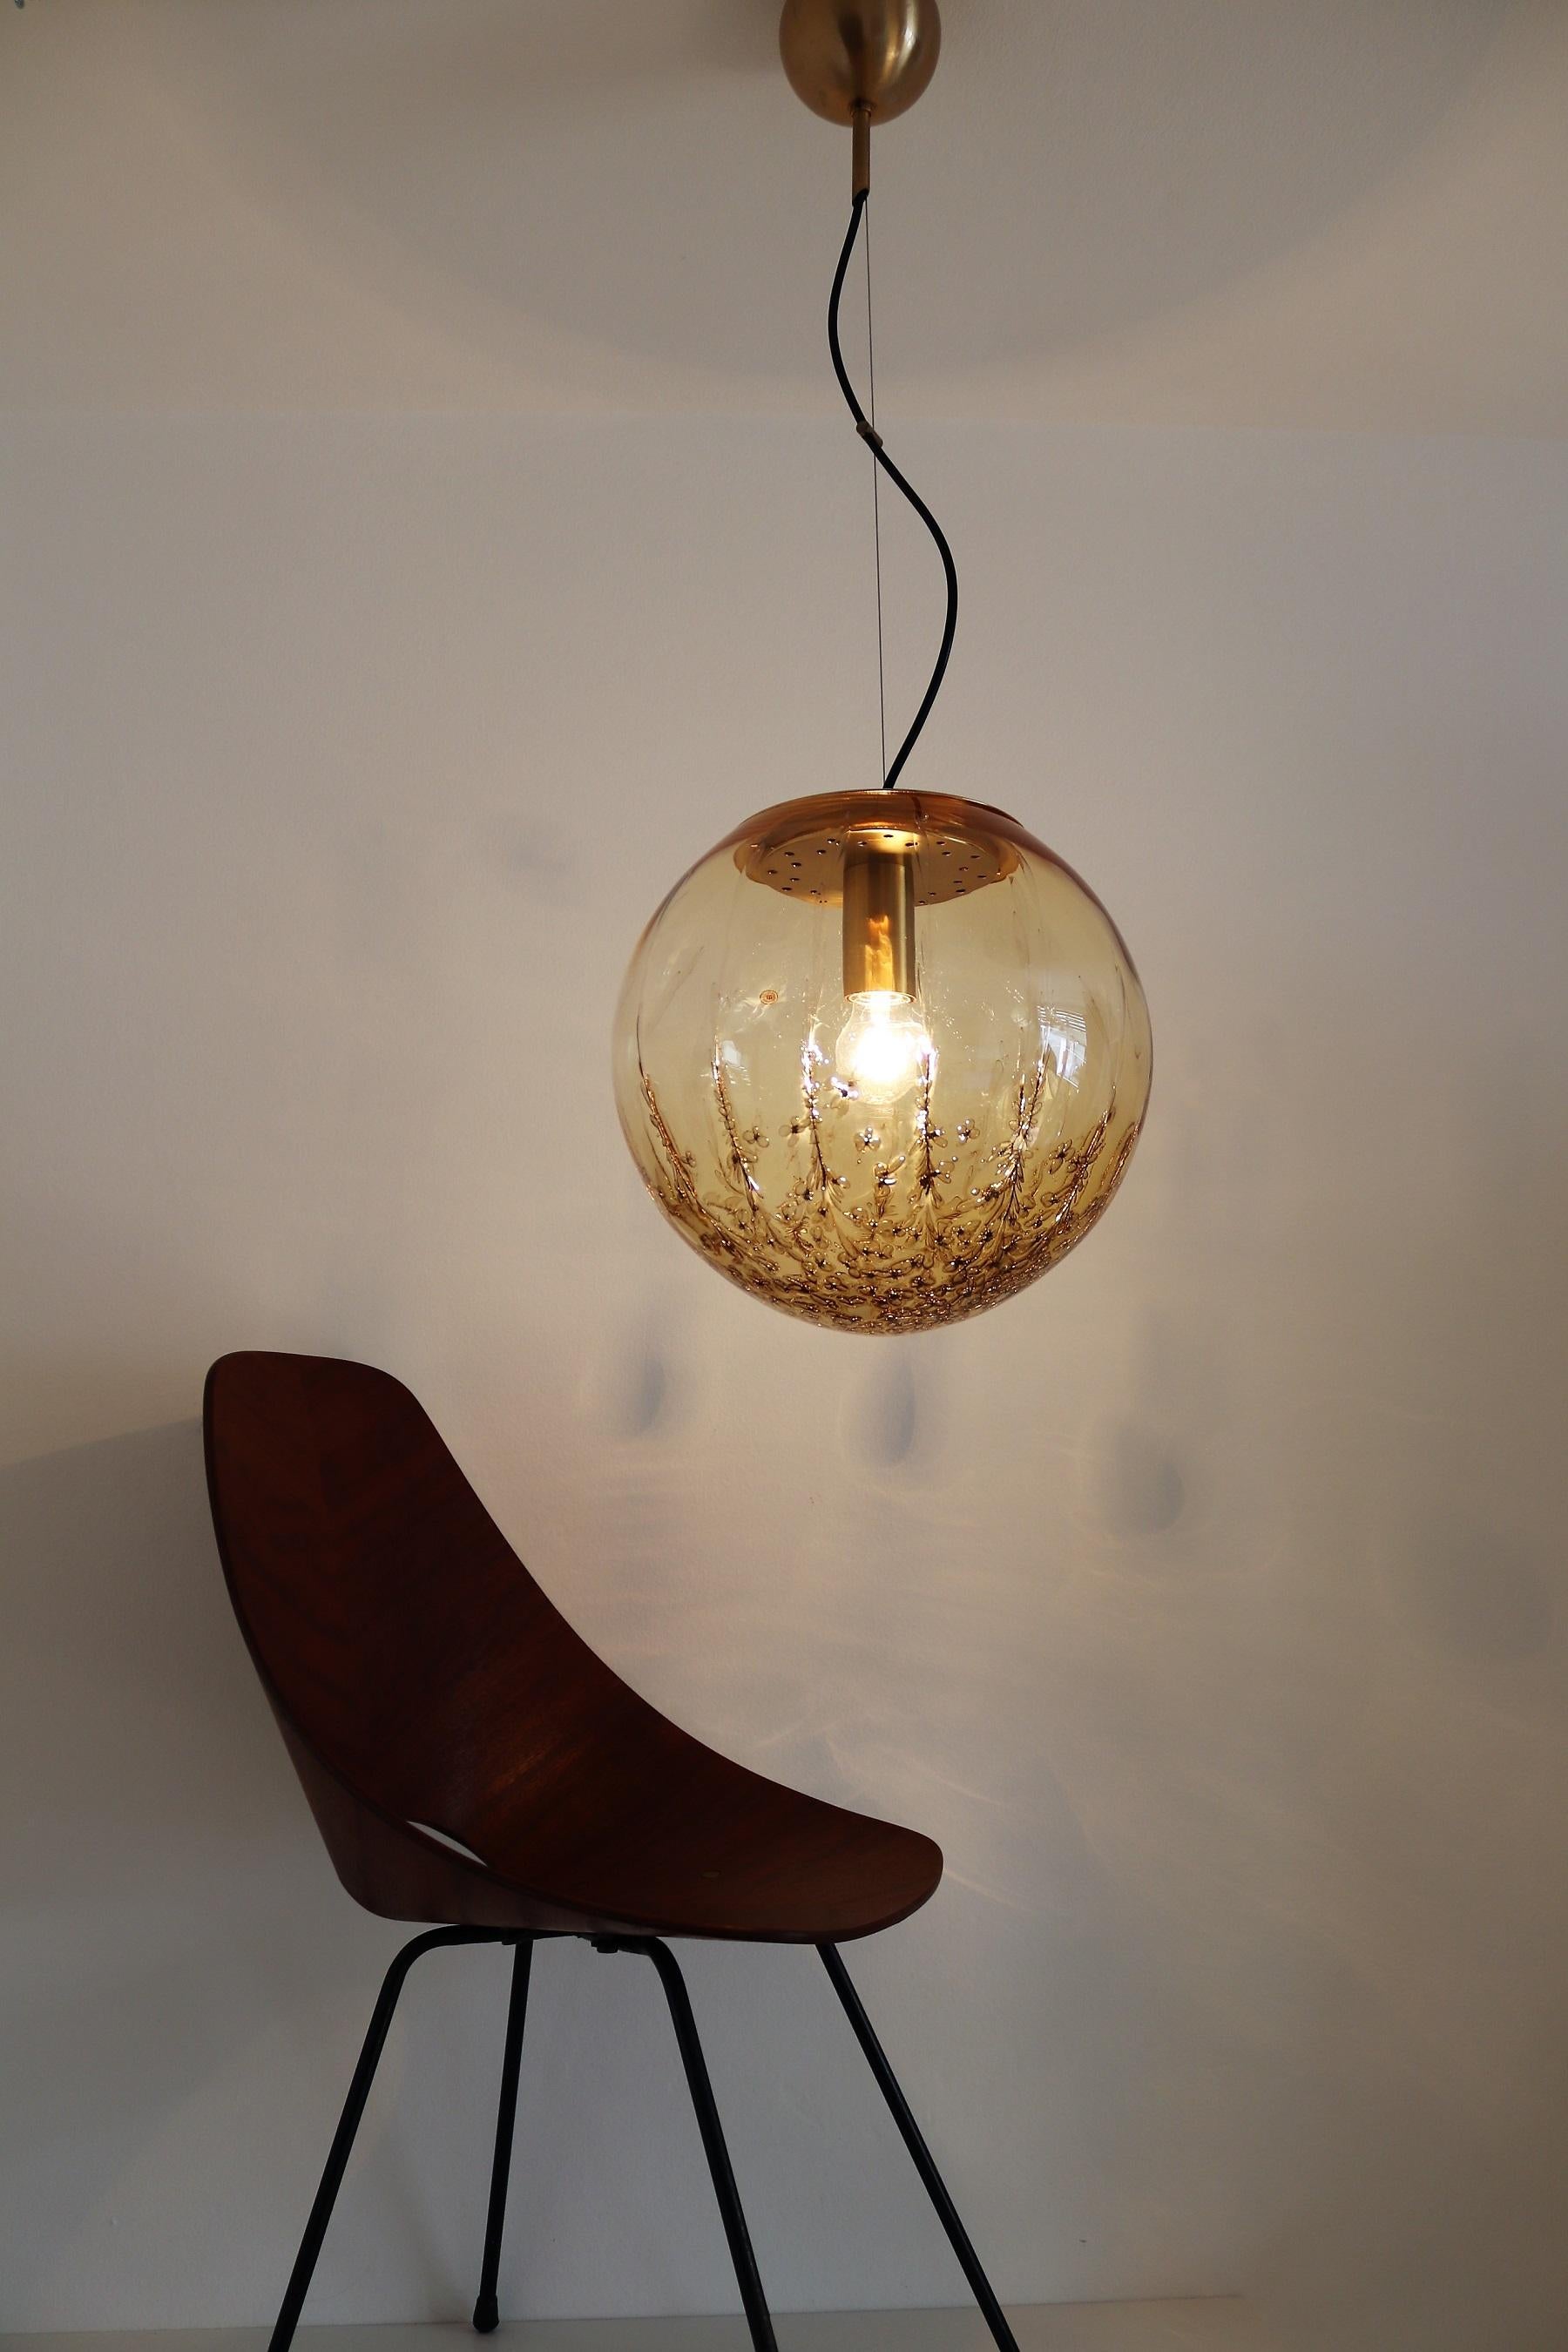 Hand-Crafted Italian Midcentury Murano Glass Sphere Pendant Lamp by La Murrina, 1970s